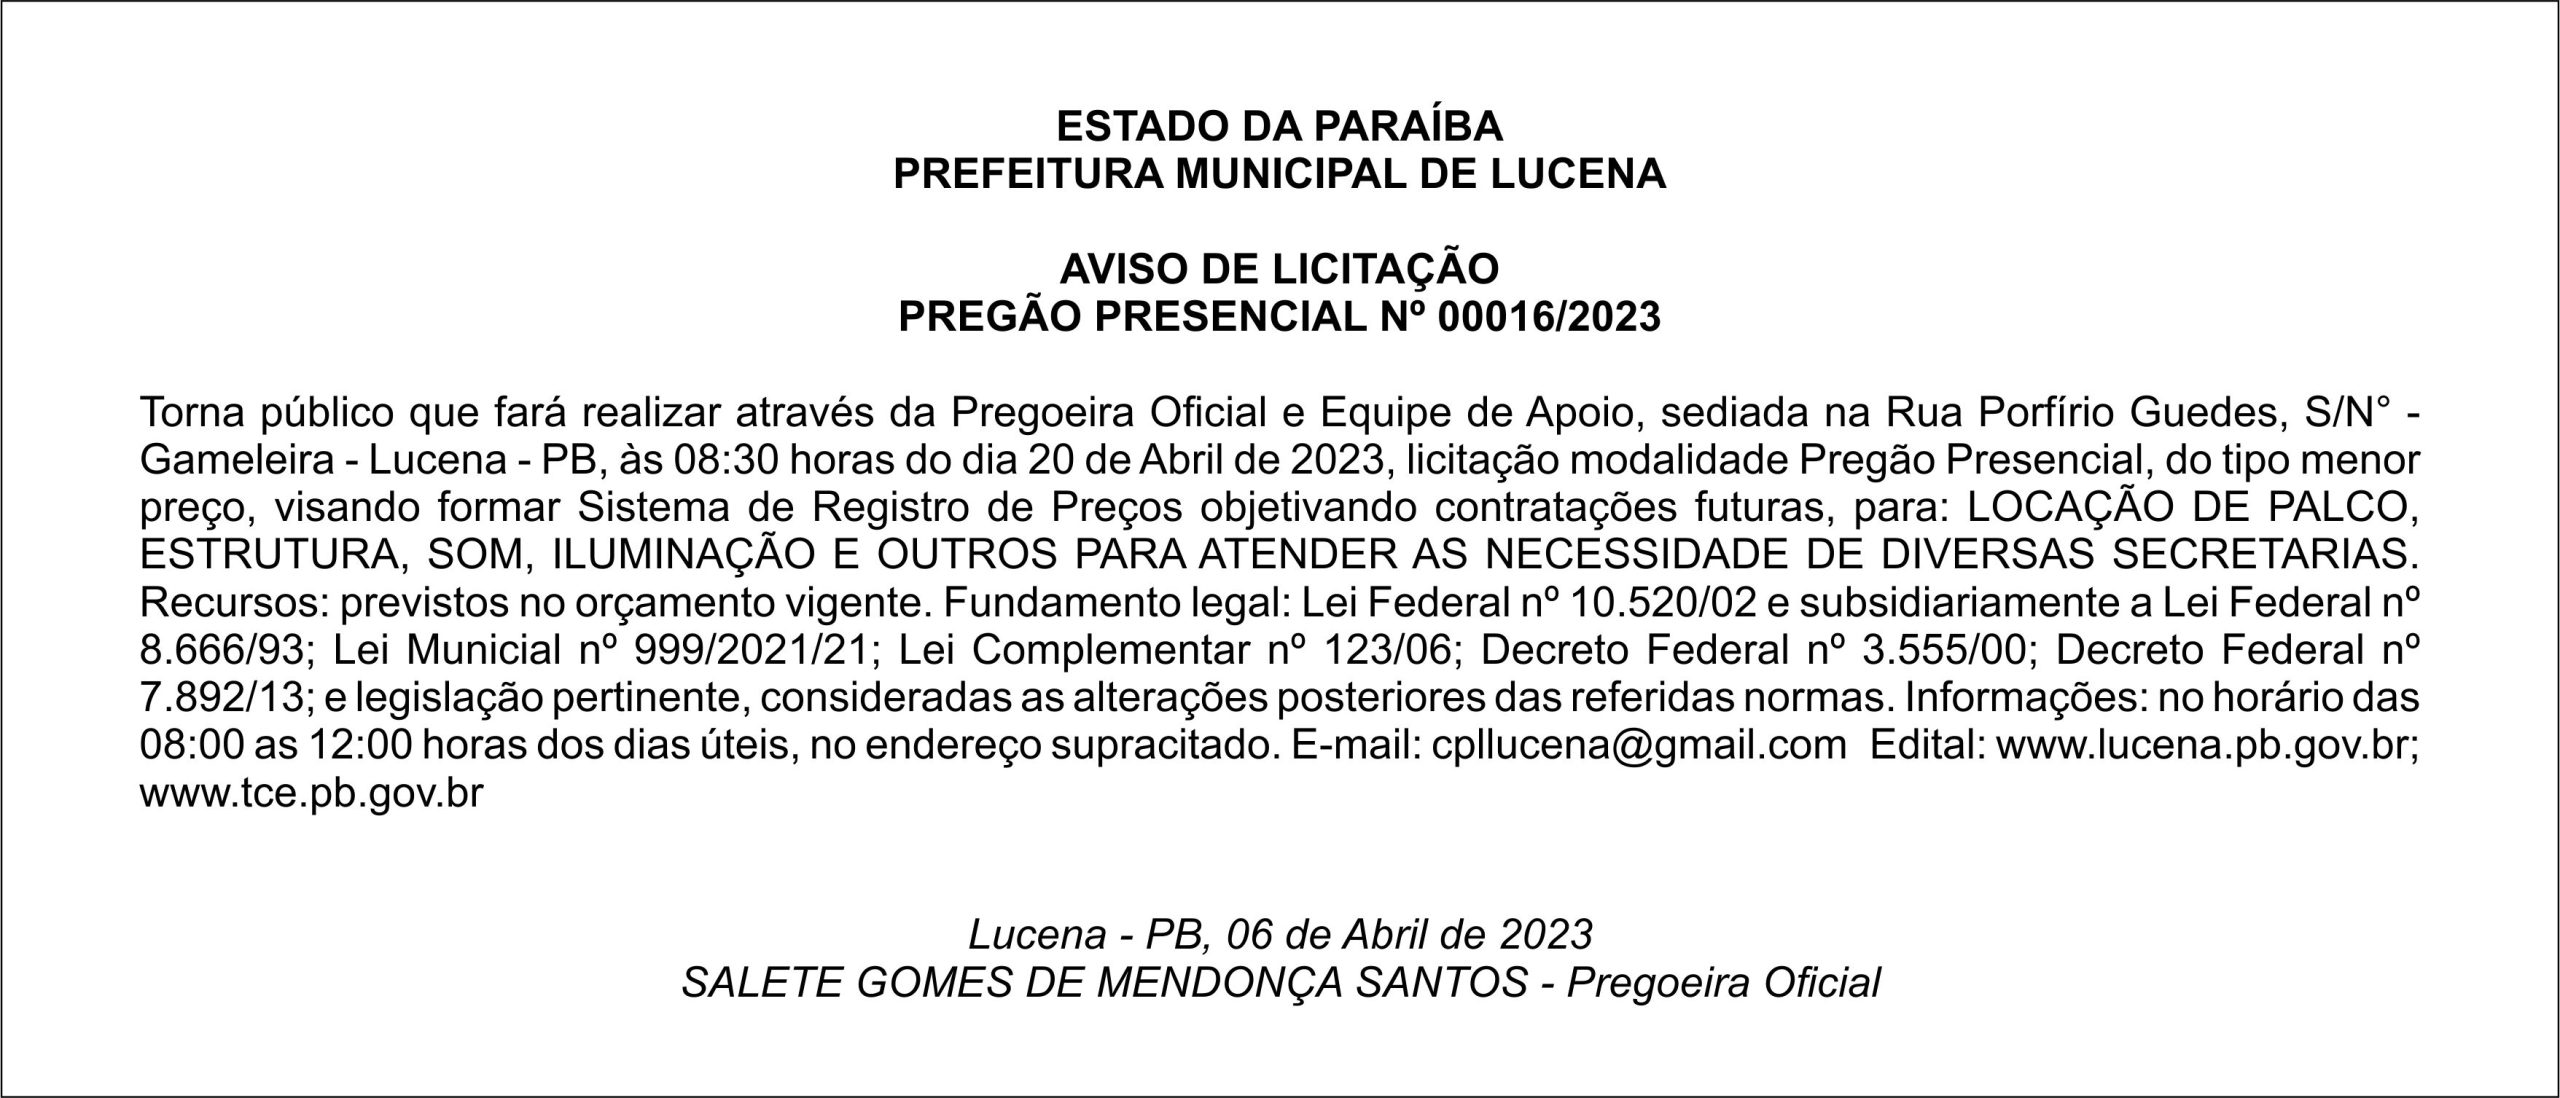 PREFEITURA MUNICIPAL DE LUCENA – AVISO DE LICITAÇÃO – PREGÃO PRESENCIAL Nº 00016/2023